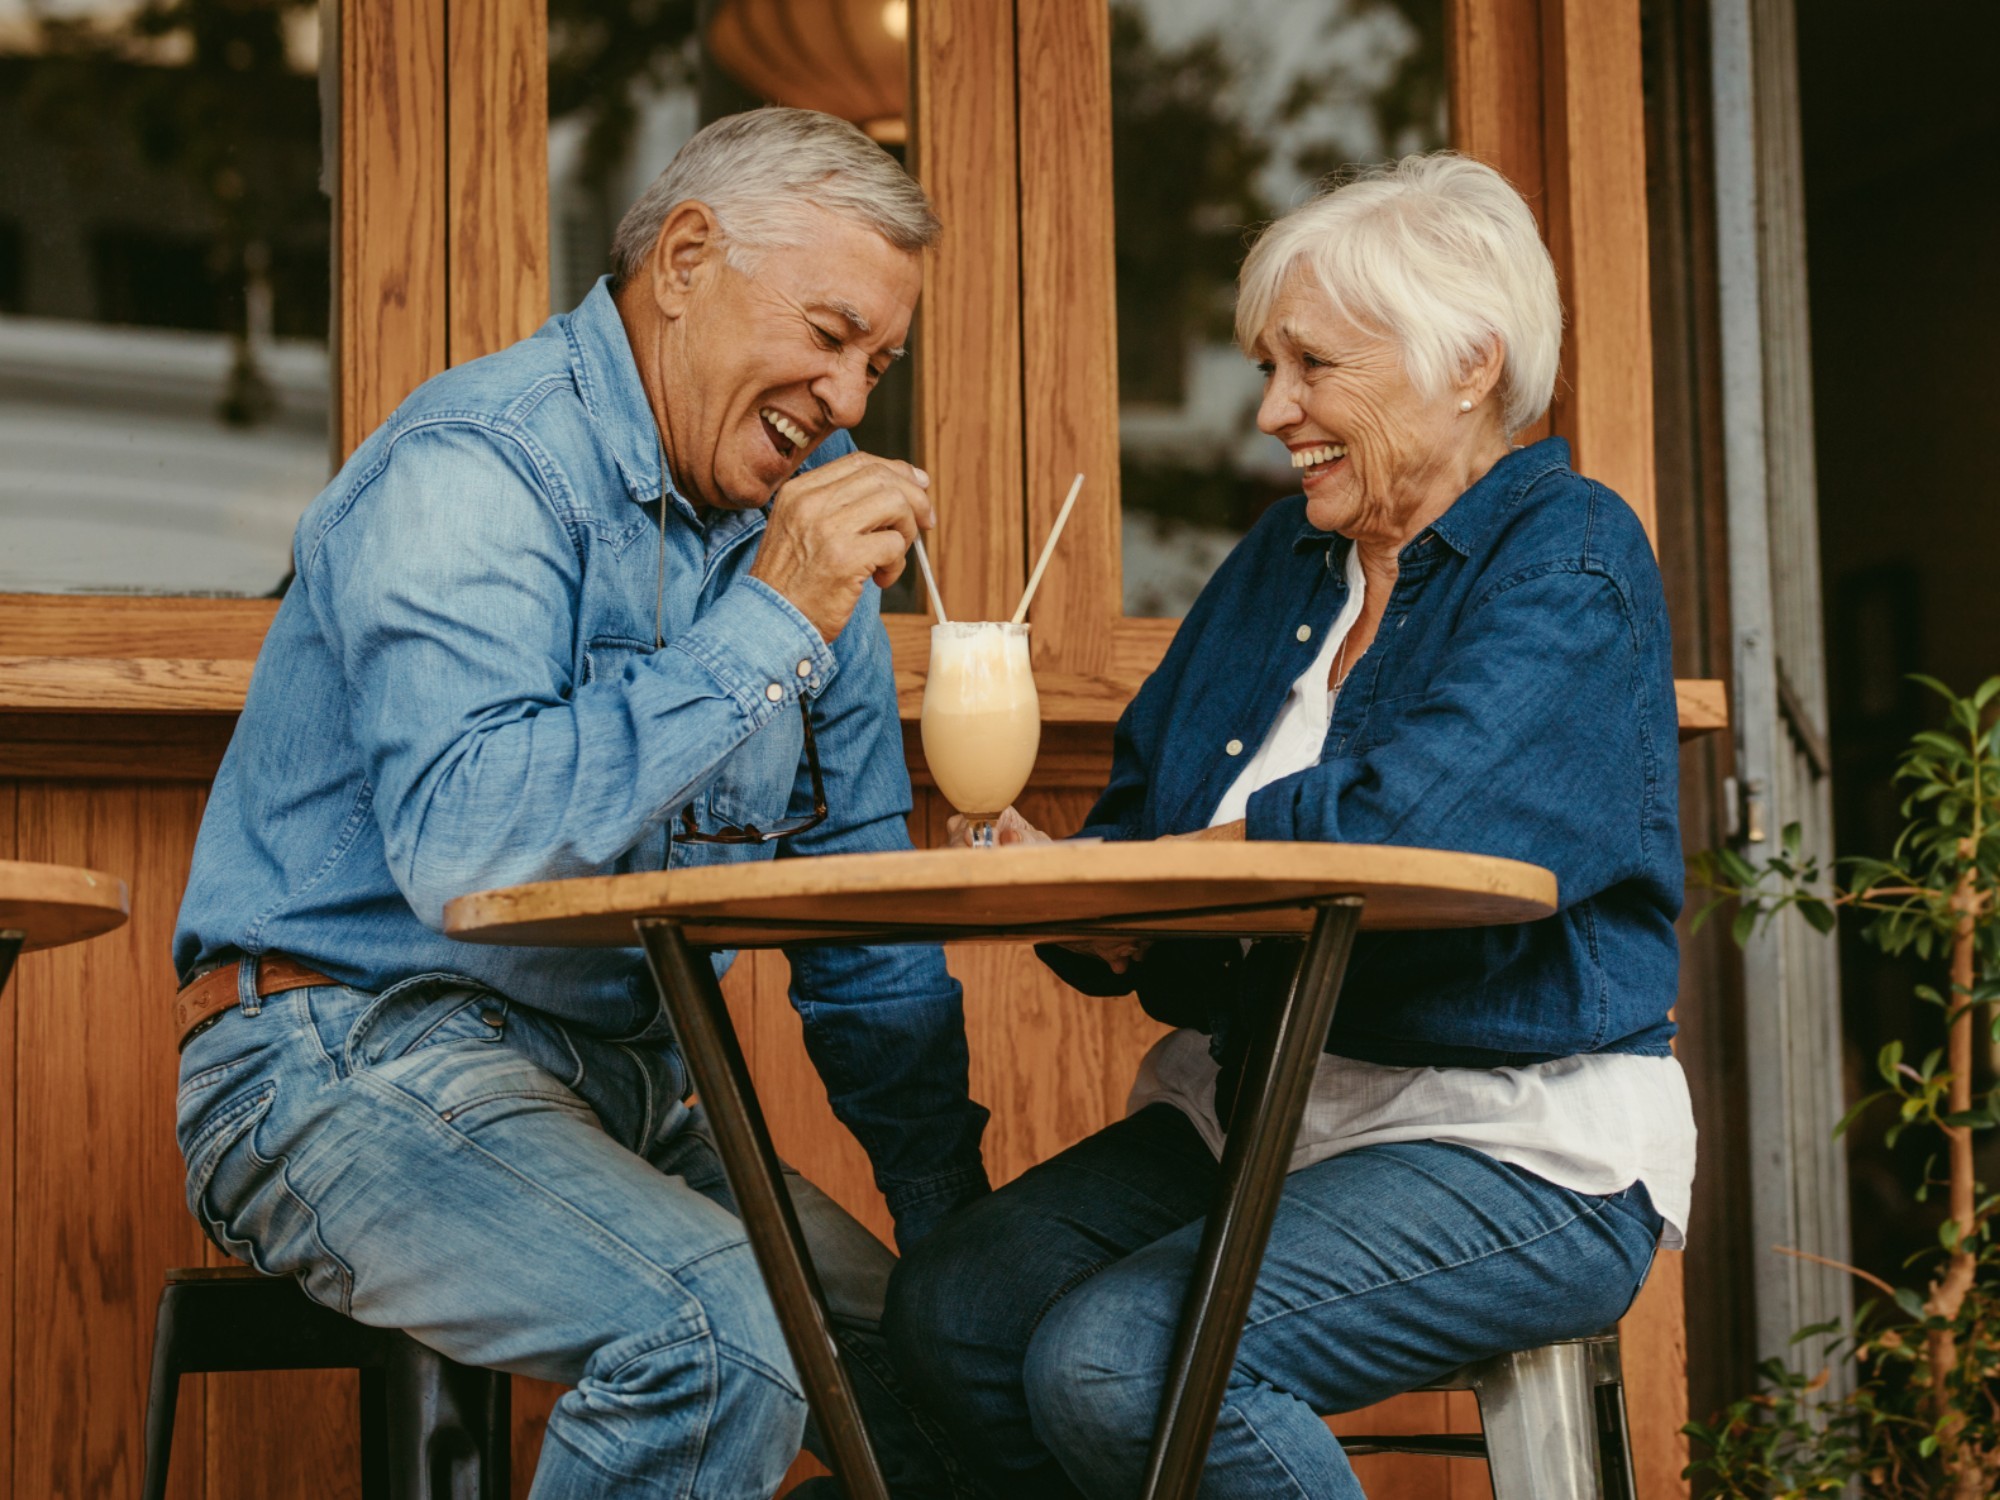 Older couple enjoying a milkshake together